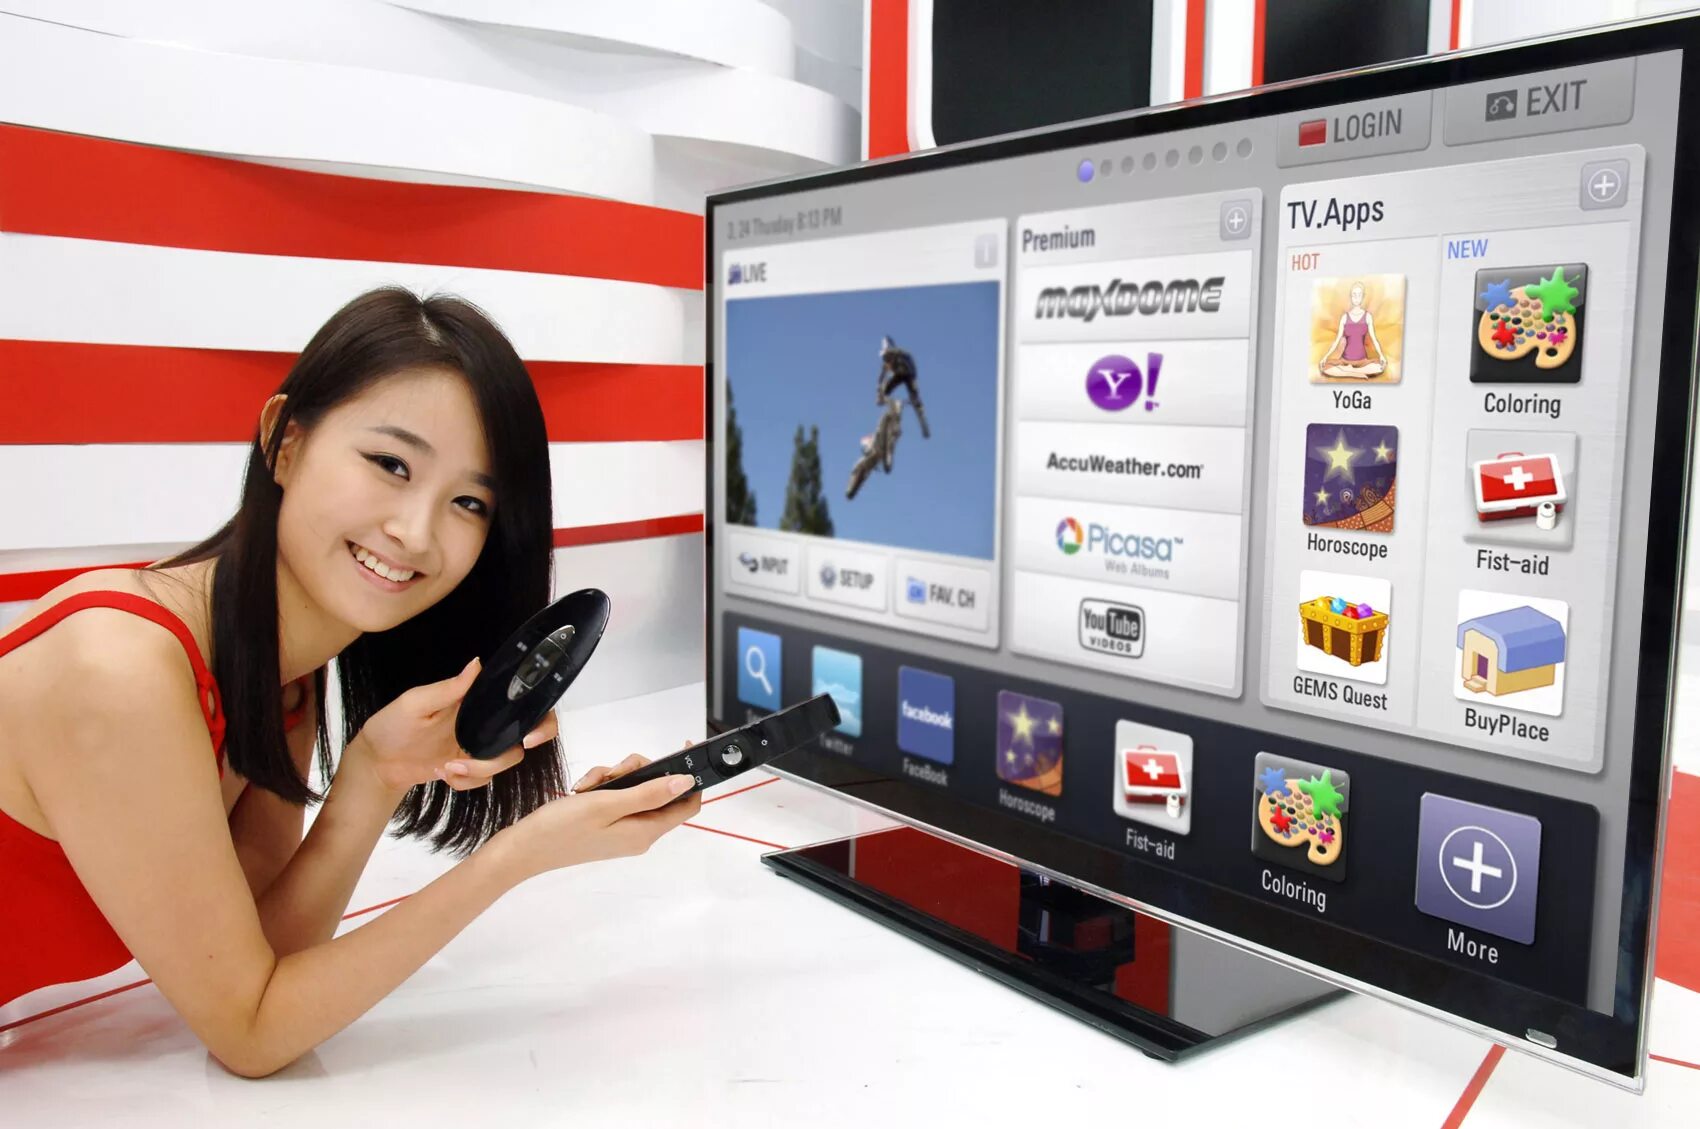 Apk на телевизор lg. Телевизор LG Smart TV. ЛГ смарт ТВ 1. Телевизор с выходом в интернет. Современные телевизоры с интернетом.